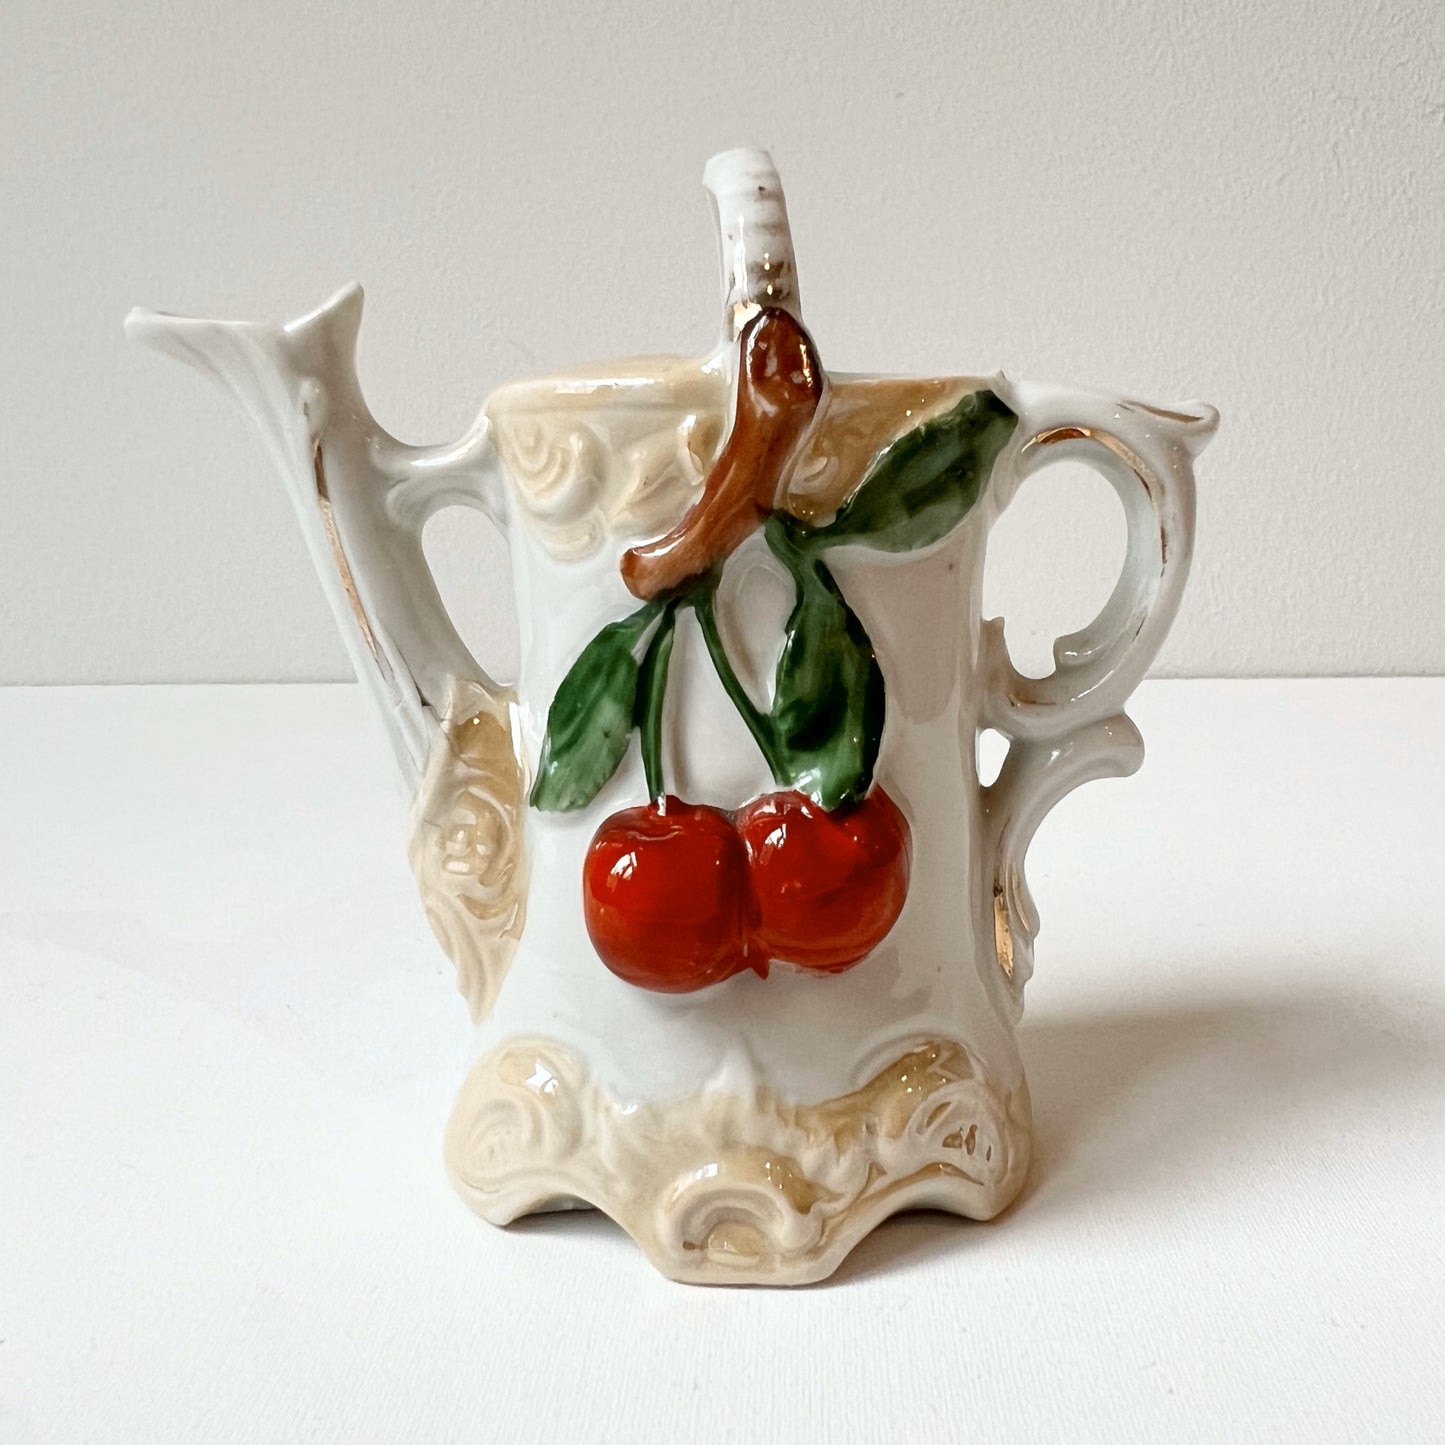 【Vintage】France - 1970s Pottery Cherry Pot